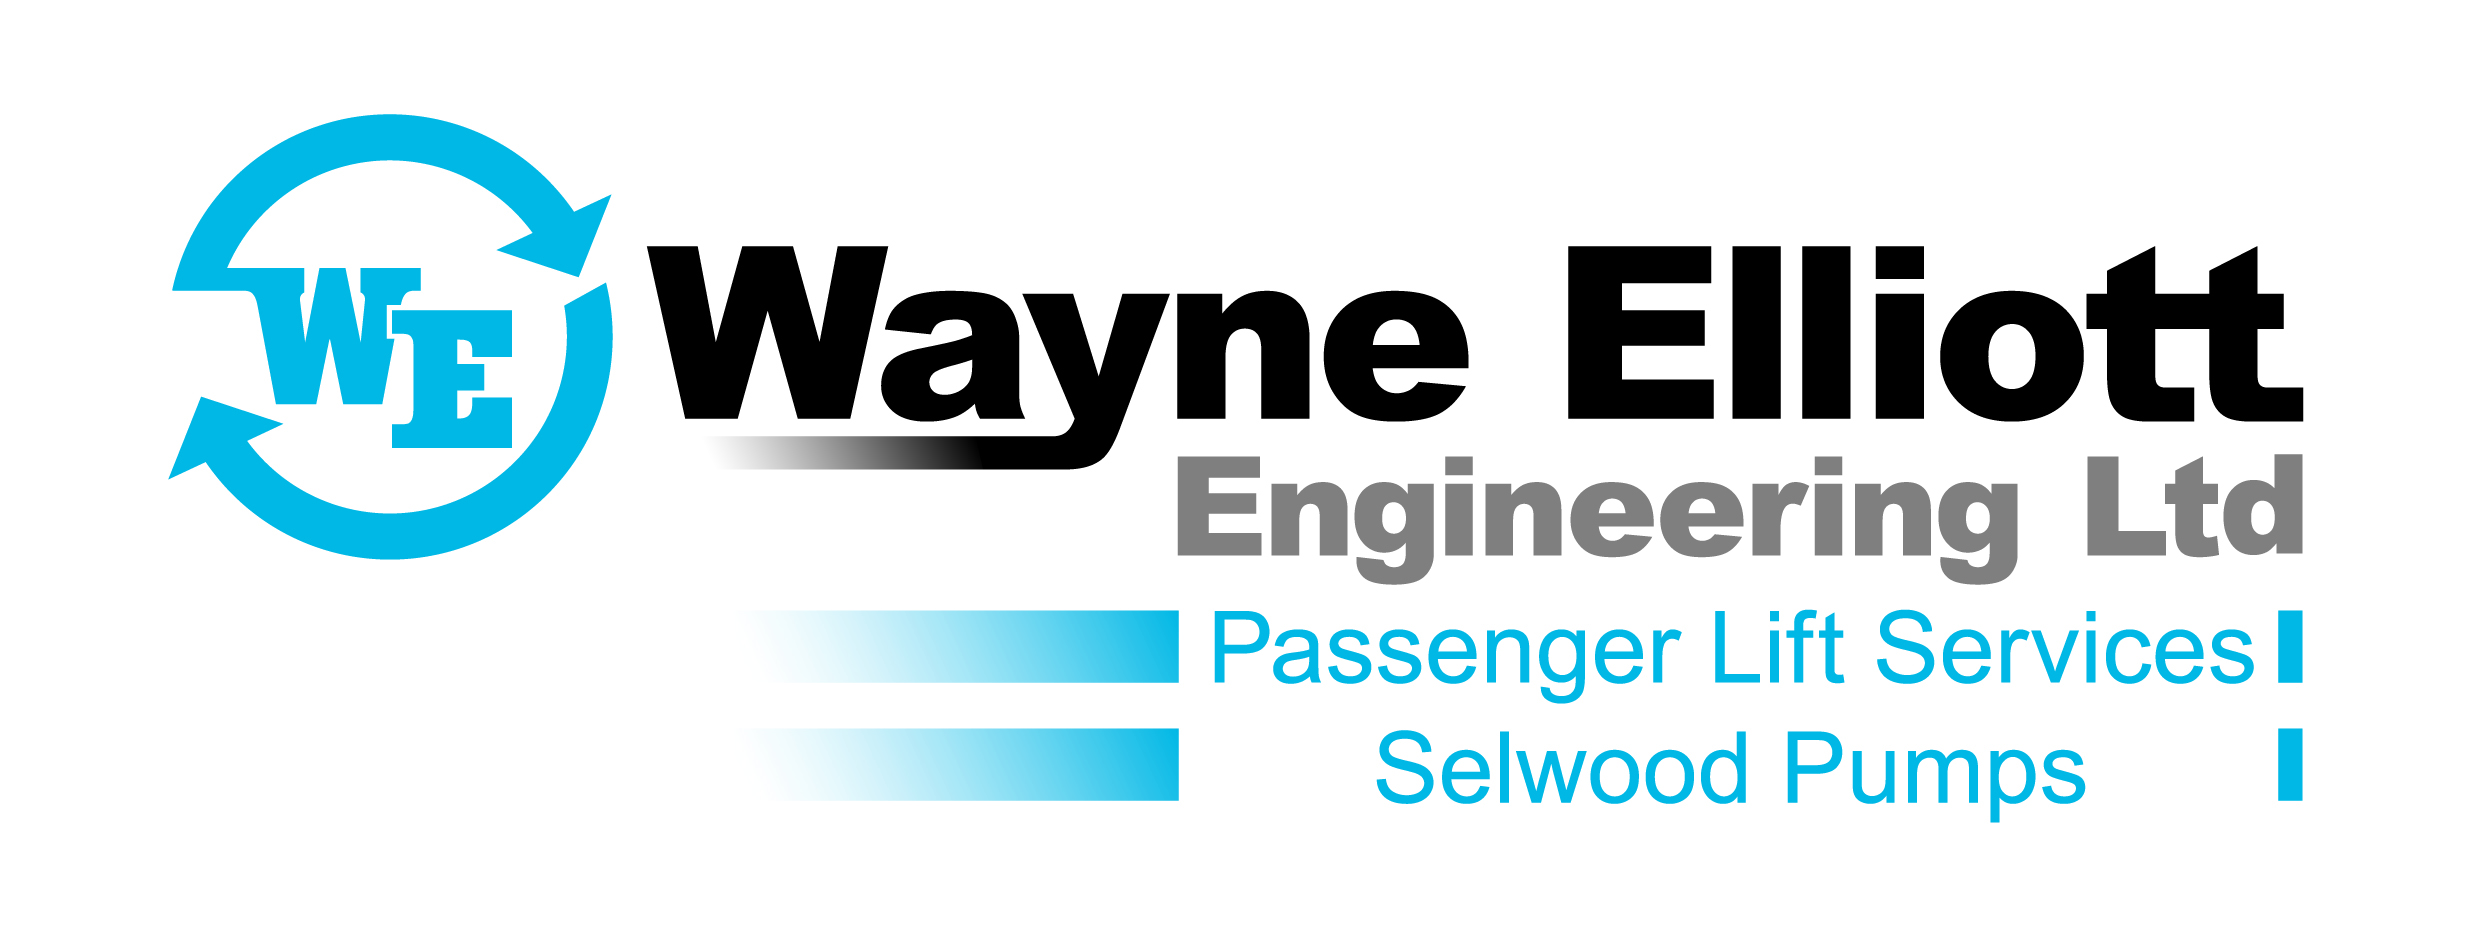 Wayne Elliott Engineering Limited